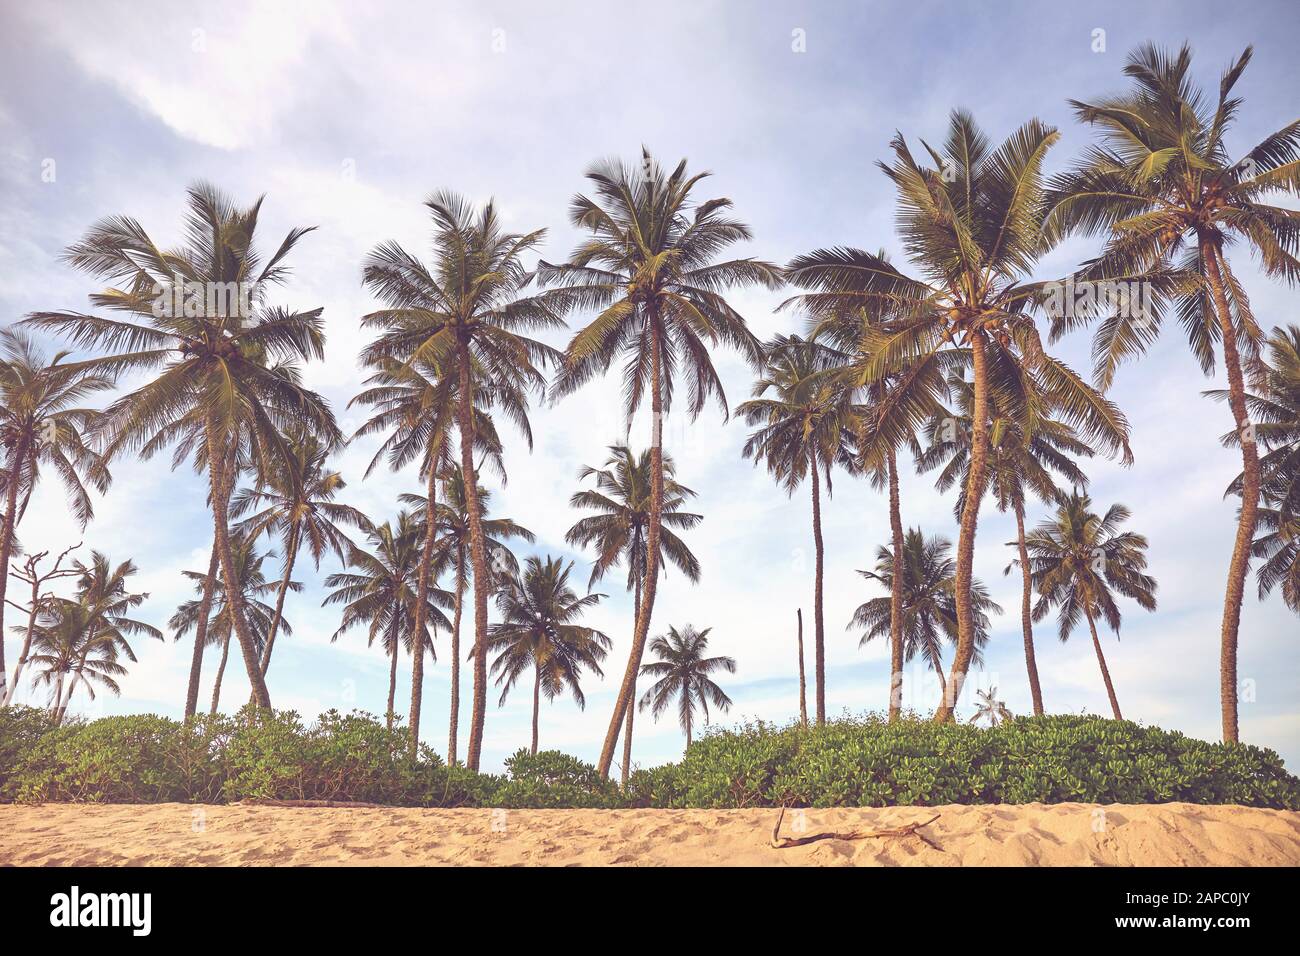 Palmiers à la noix de coco sur une plage, coloration appliquée, Sri Lanka. Banque D'Images